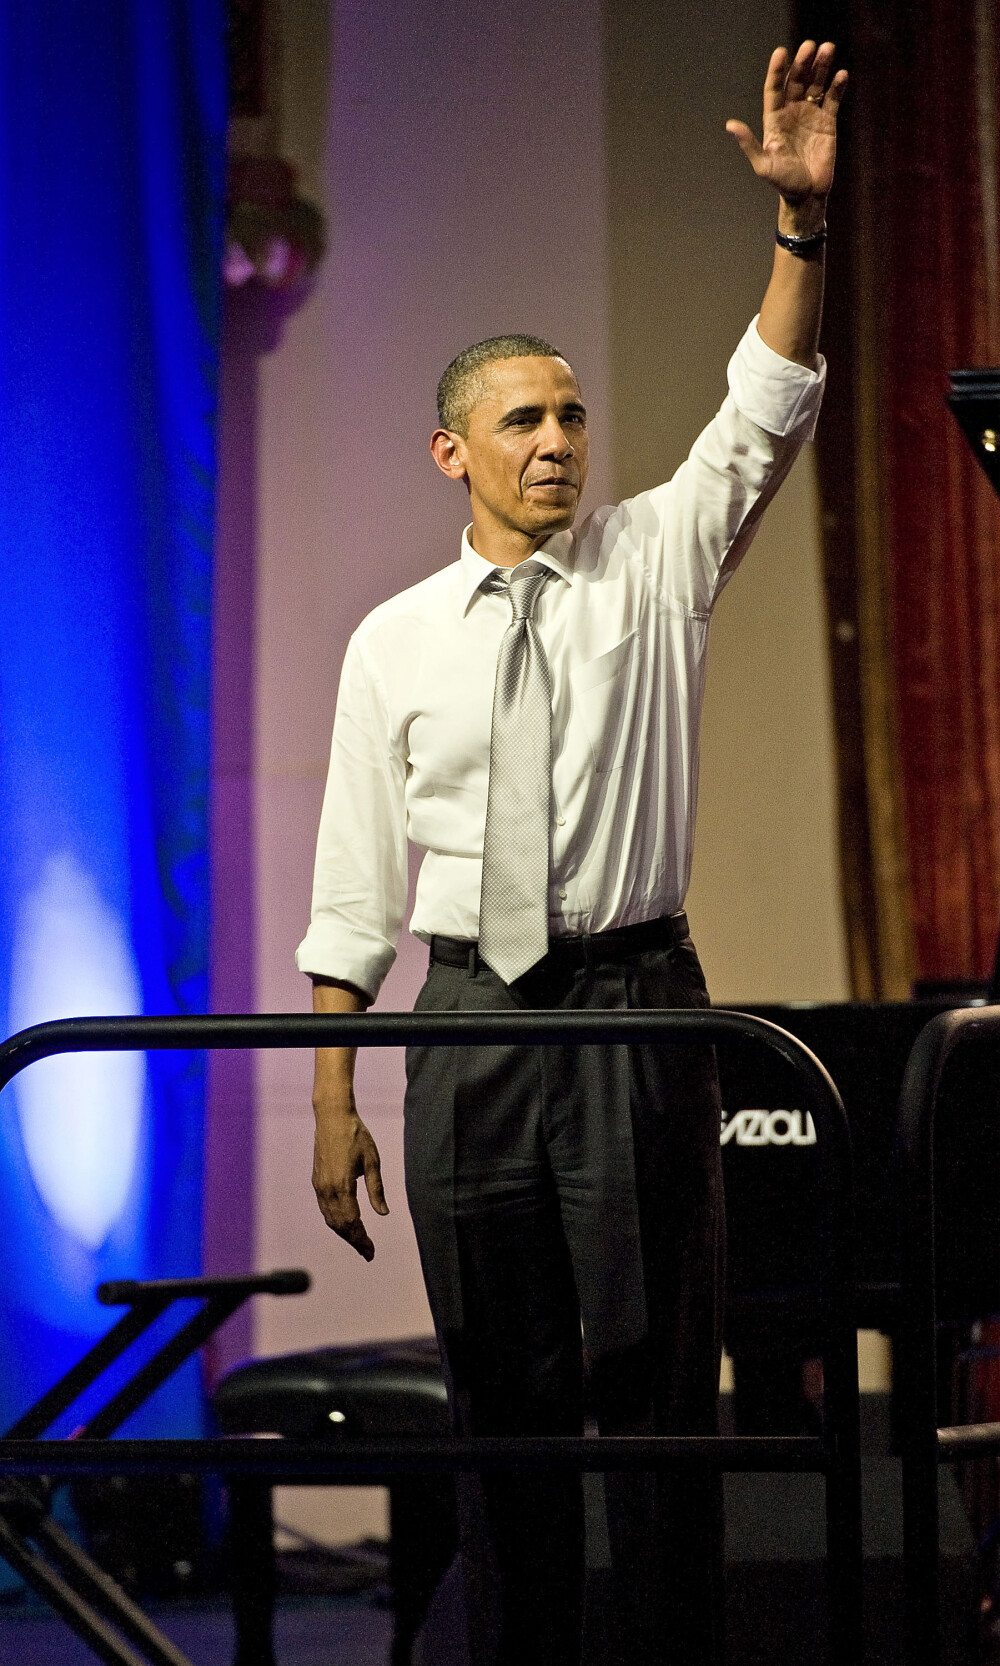 Un designer roman la ziua lui Obama. 50 de ani serbati cu fast-food, cheta si celebritati - Imaginea 9